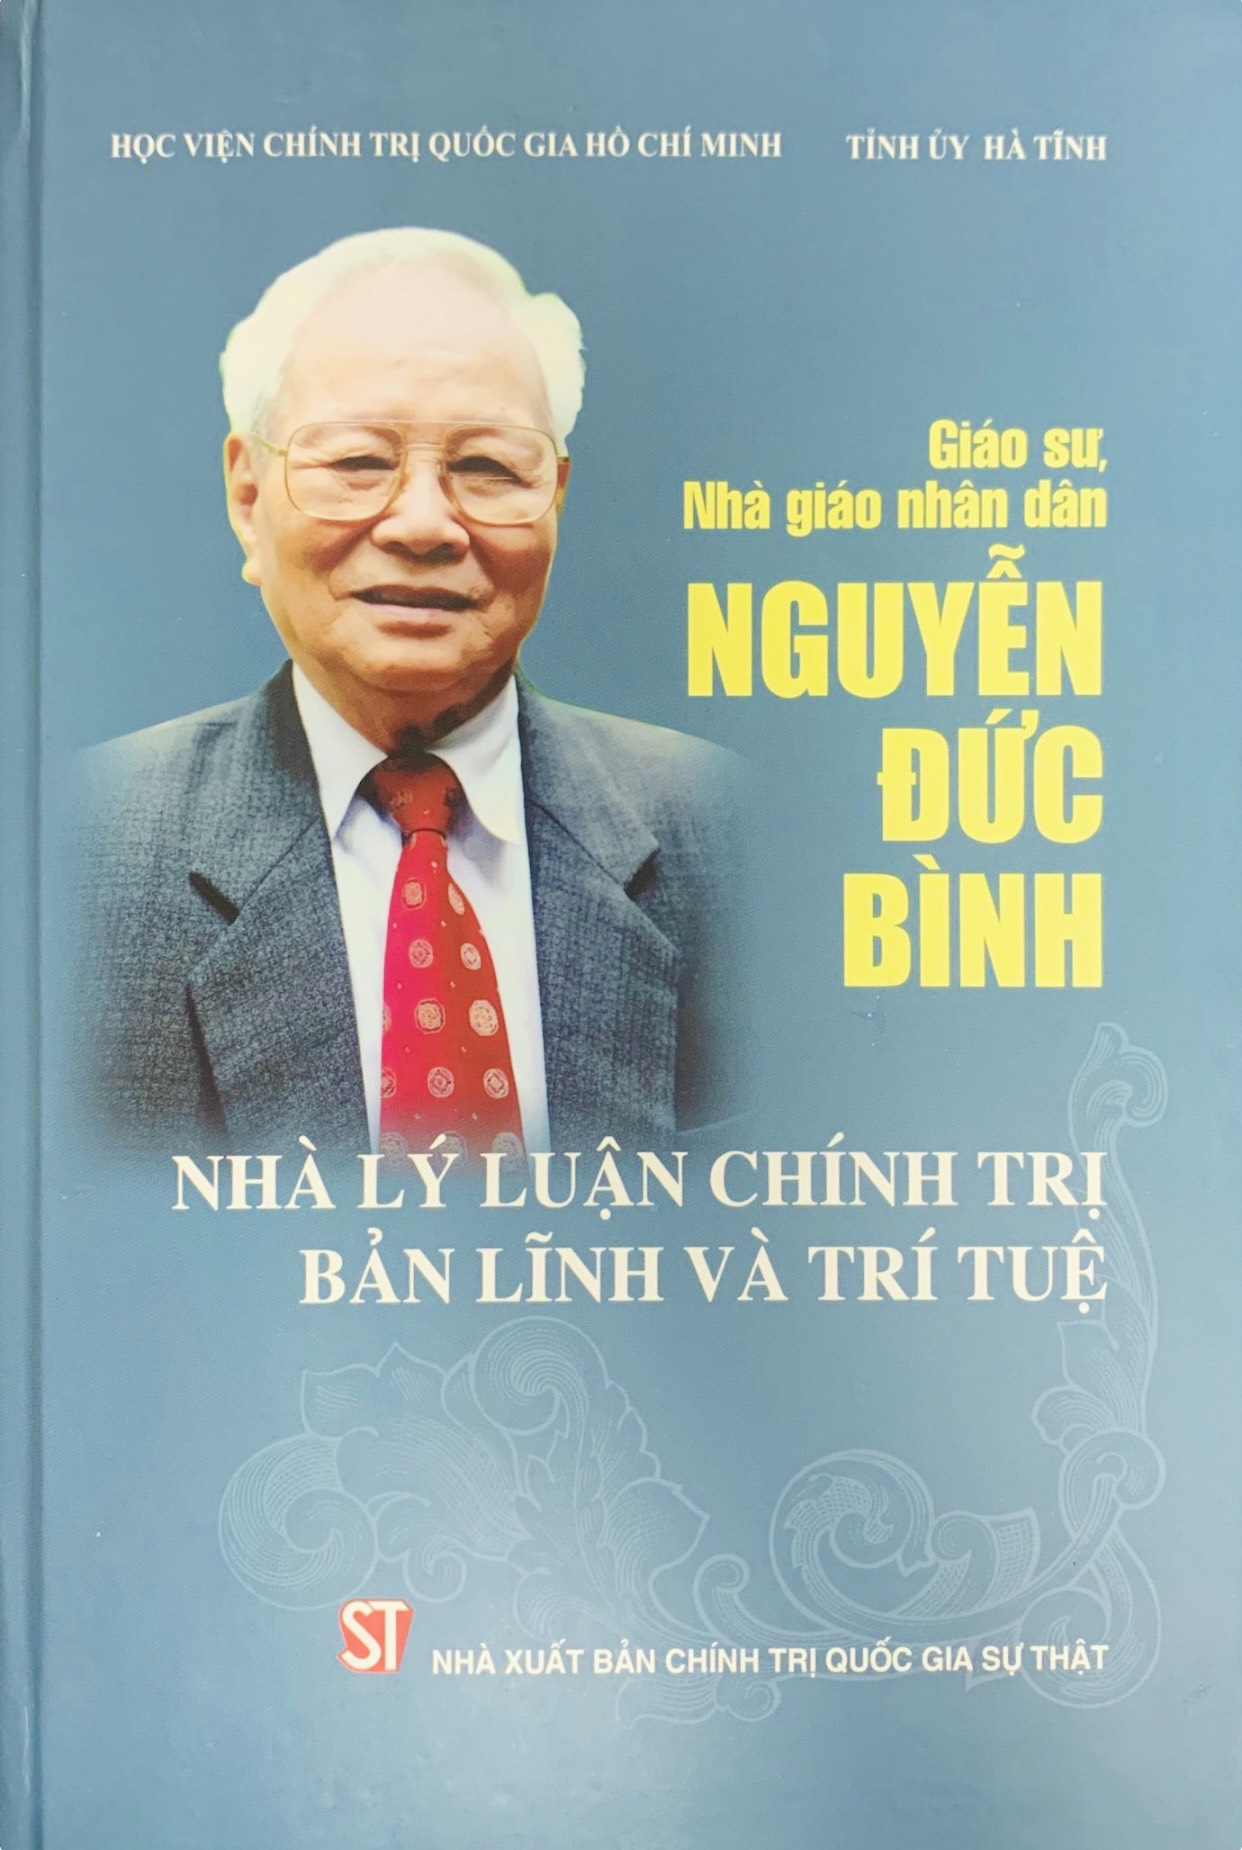 Giáo sư, Nhà giáo nhân dân Nguyễn Đức Bình: Nhà lý luận chính trị bản lĩnh và trí tuệ (xuất bản 2019)